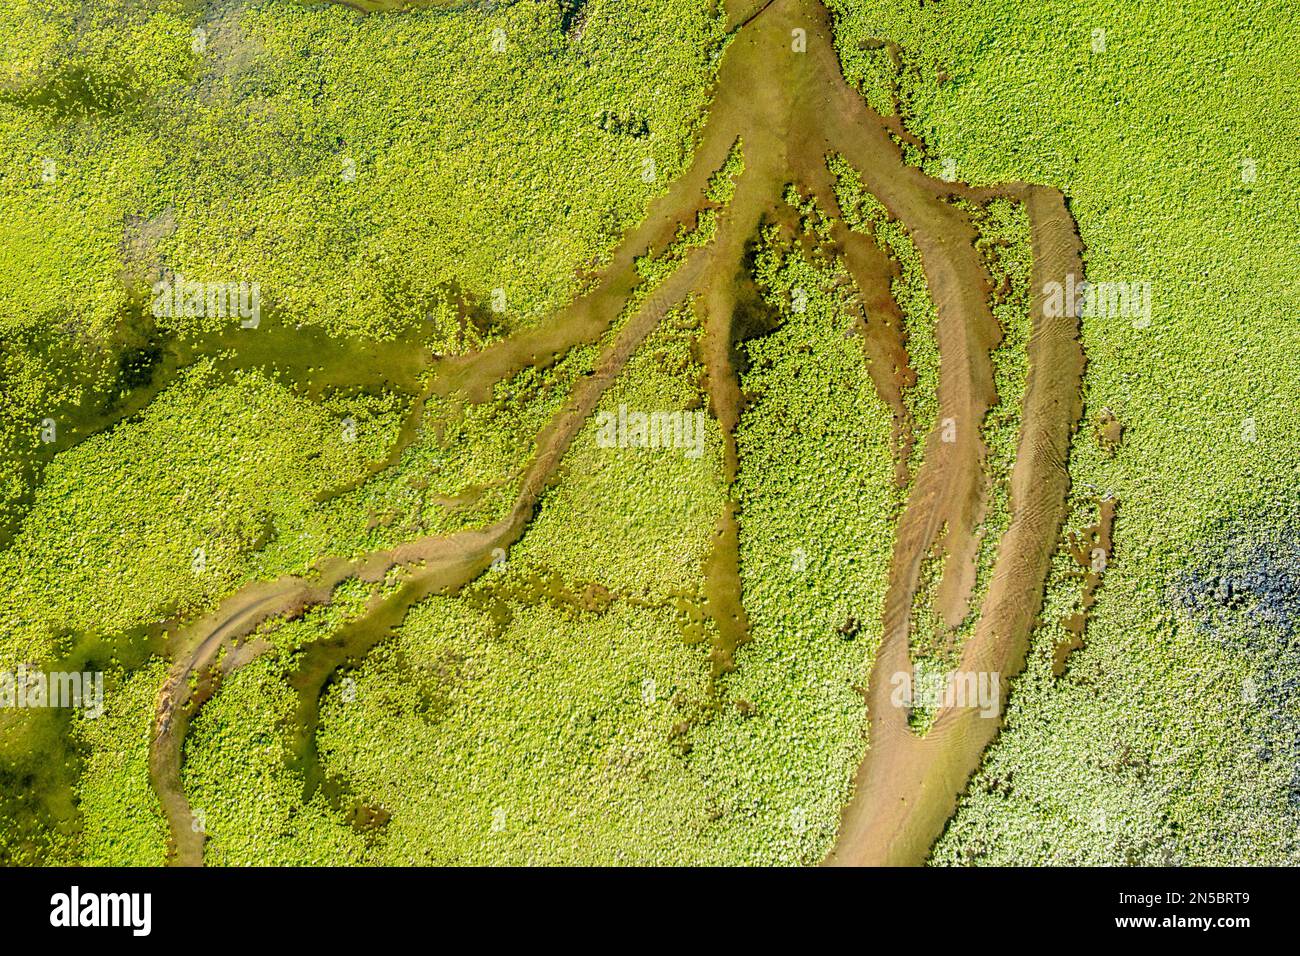 Canaux de drainage d'un lac de plage couvert de duckweed, Espagne, Andalousie, Bolonia Banque D'Images